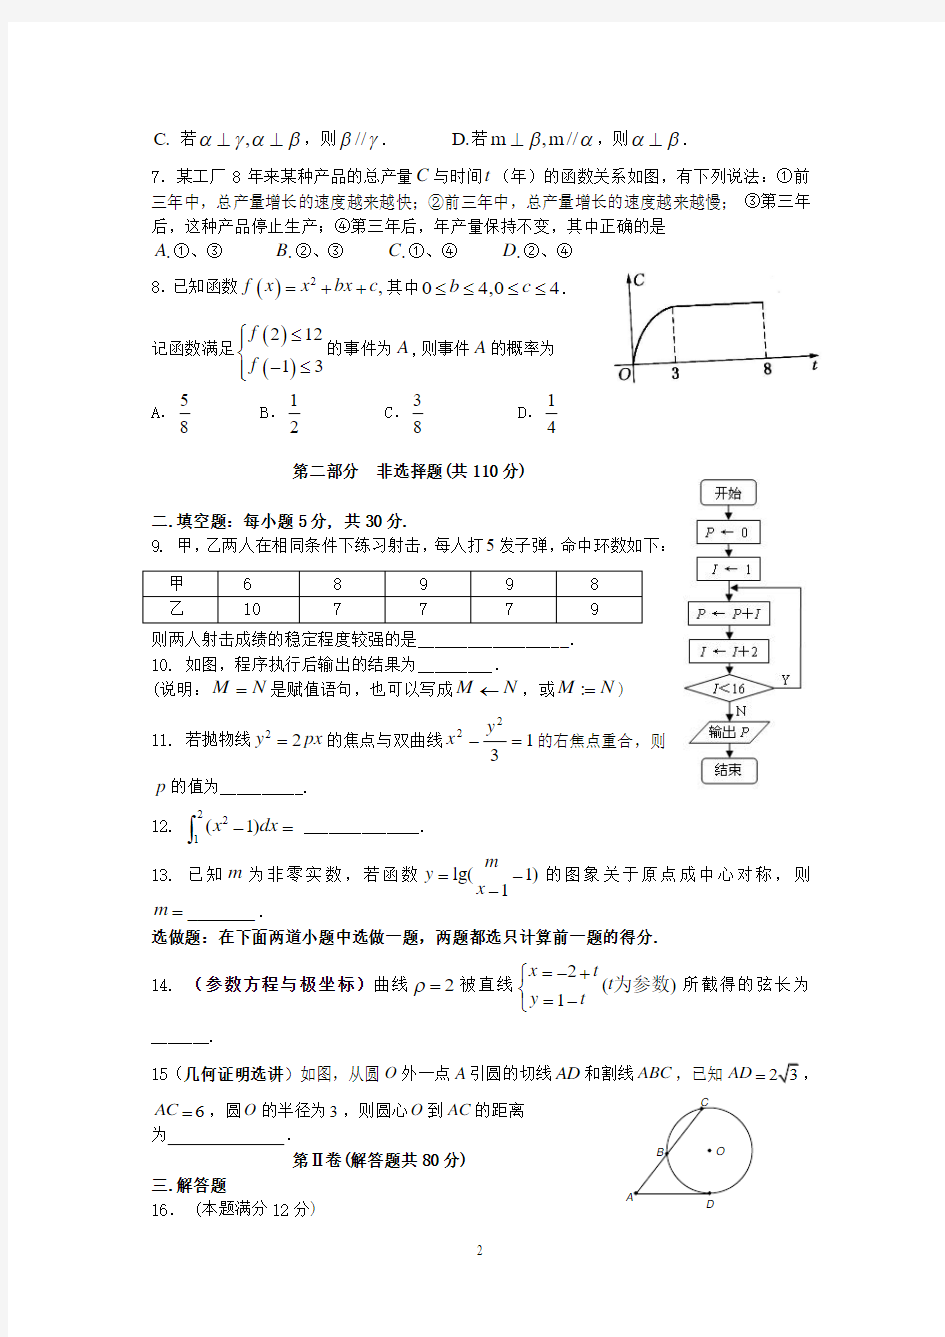 2014年高考理科数学总复习试卷第13卷